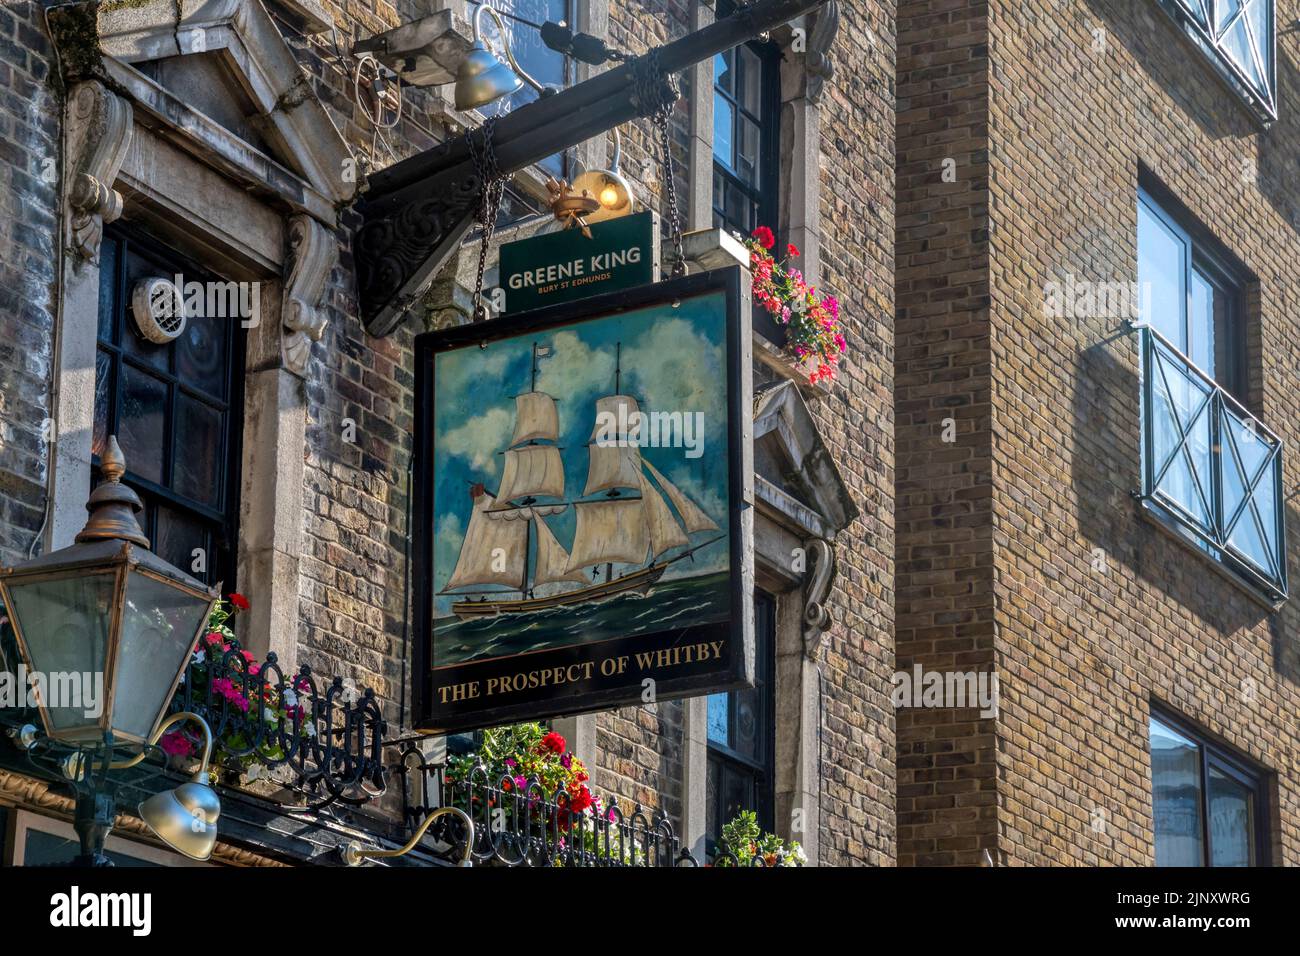 Panneau de pub pour la perspective de Whitby, un pub historique au bord de la rivière à Wapping, Londres. Banque D'Images